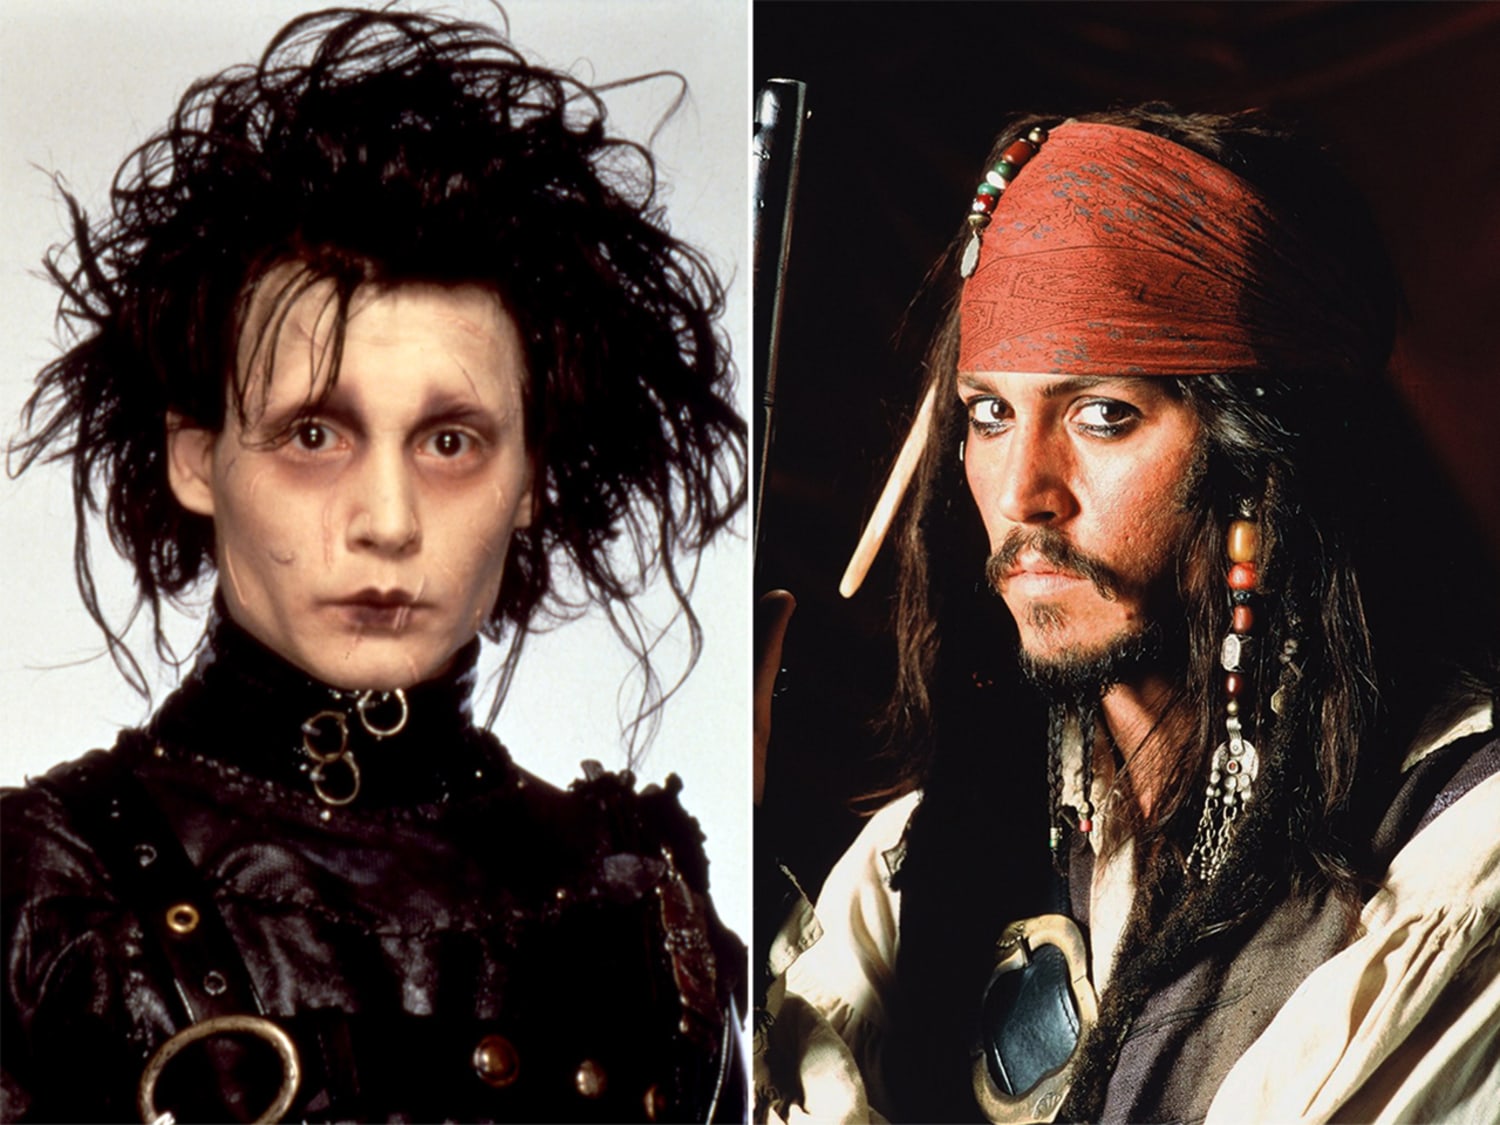 The many looks of Johnny Depp